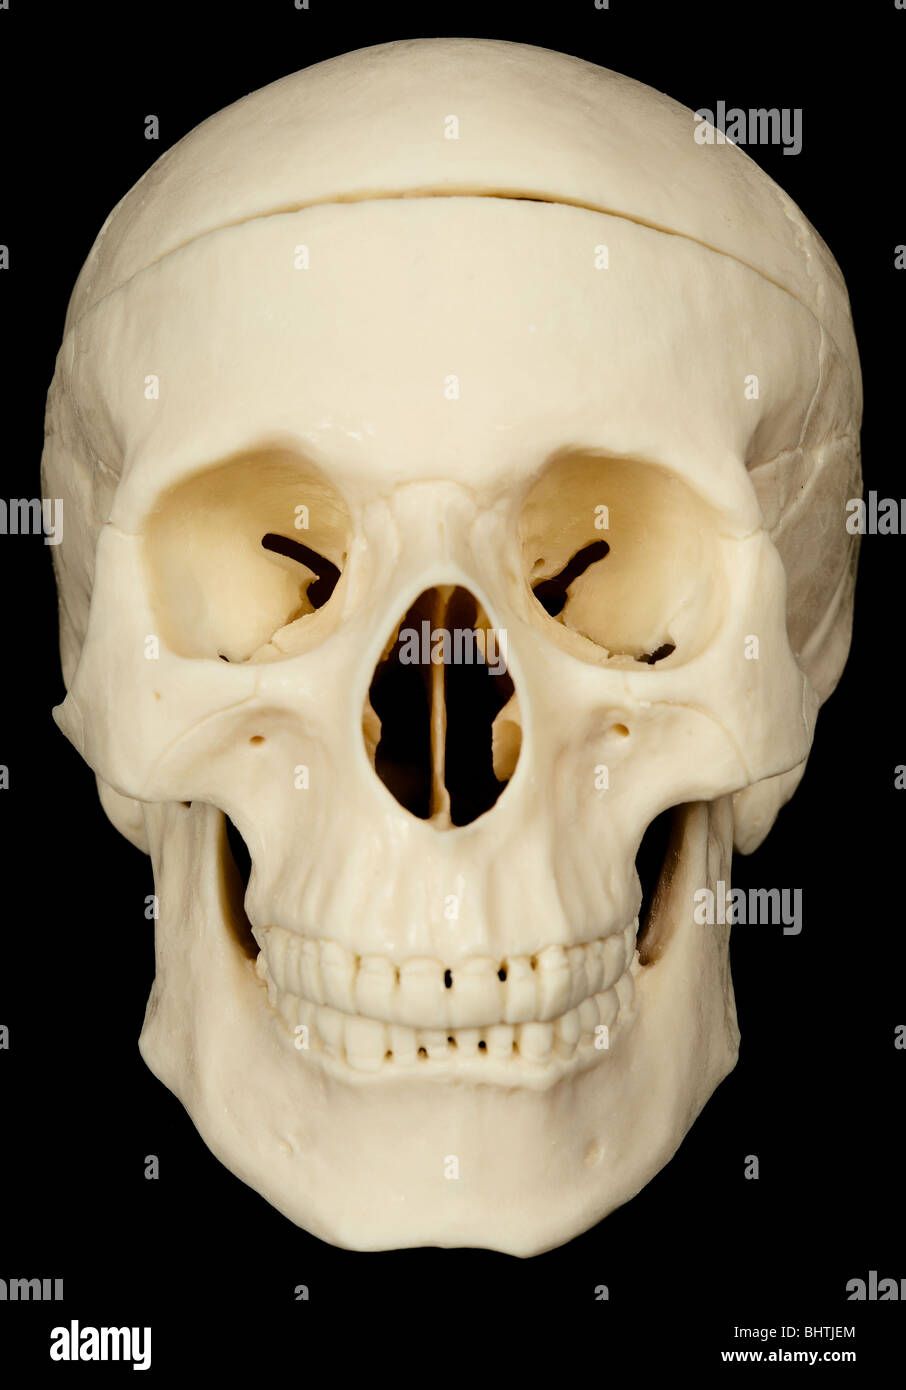 Crâne humain sur fond noir close up Banque D'Images